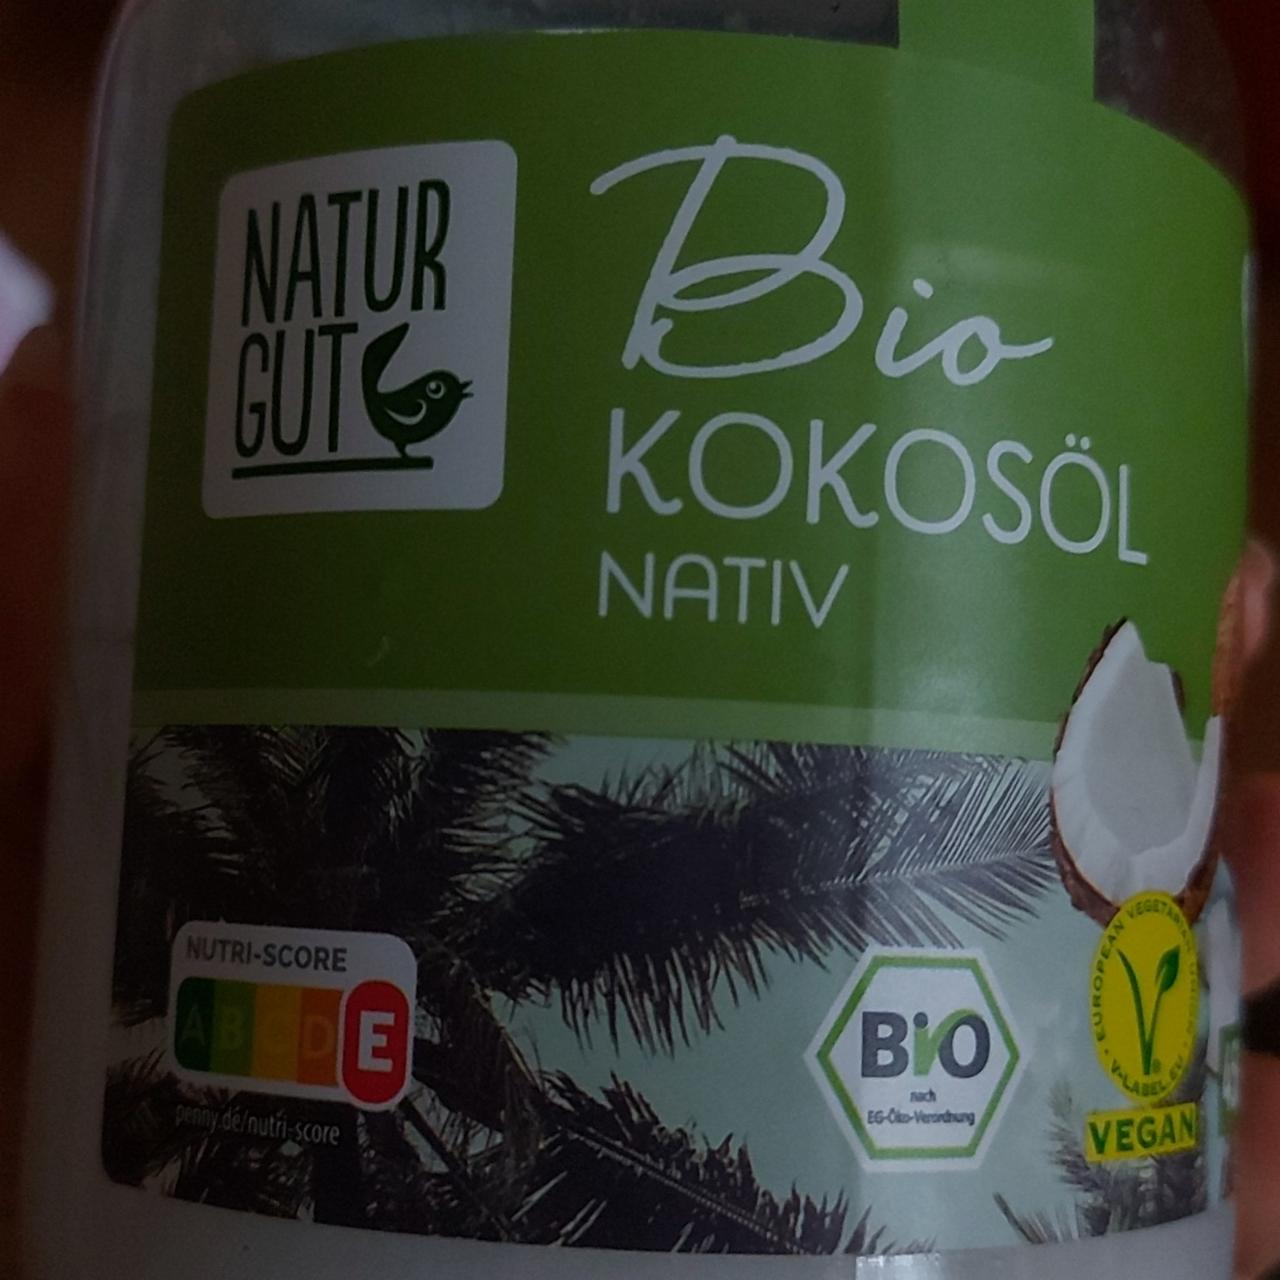 Fotografie - Bio kokosöl nativ Natur Gut